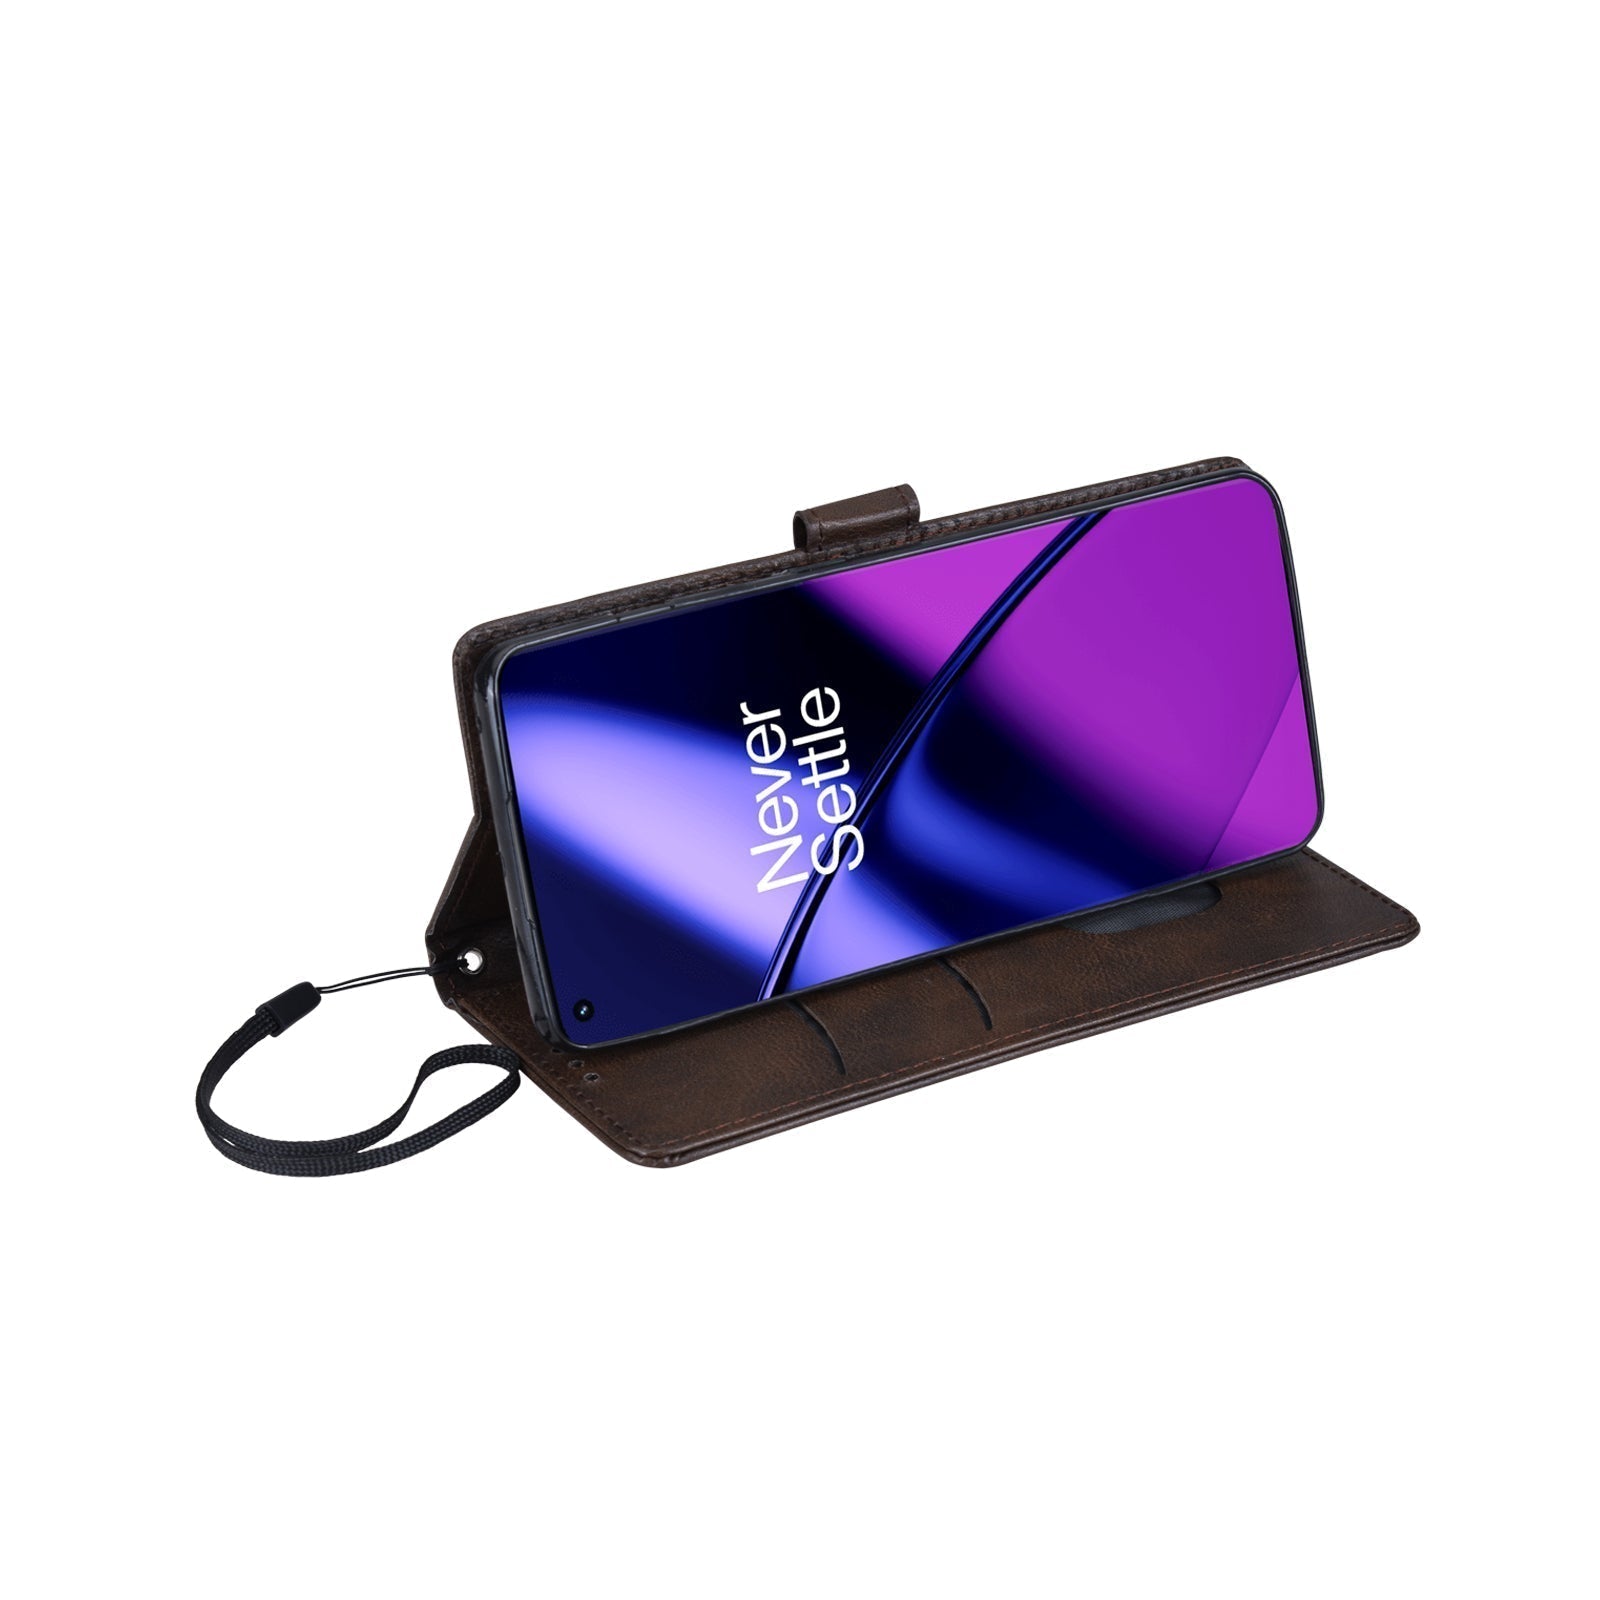 Bracevor Premium Design Flip Cover case for Oneplus 11R 5G